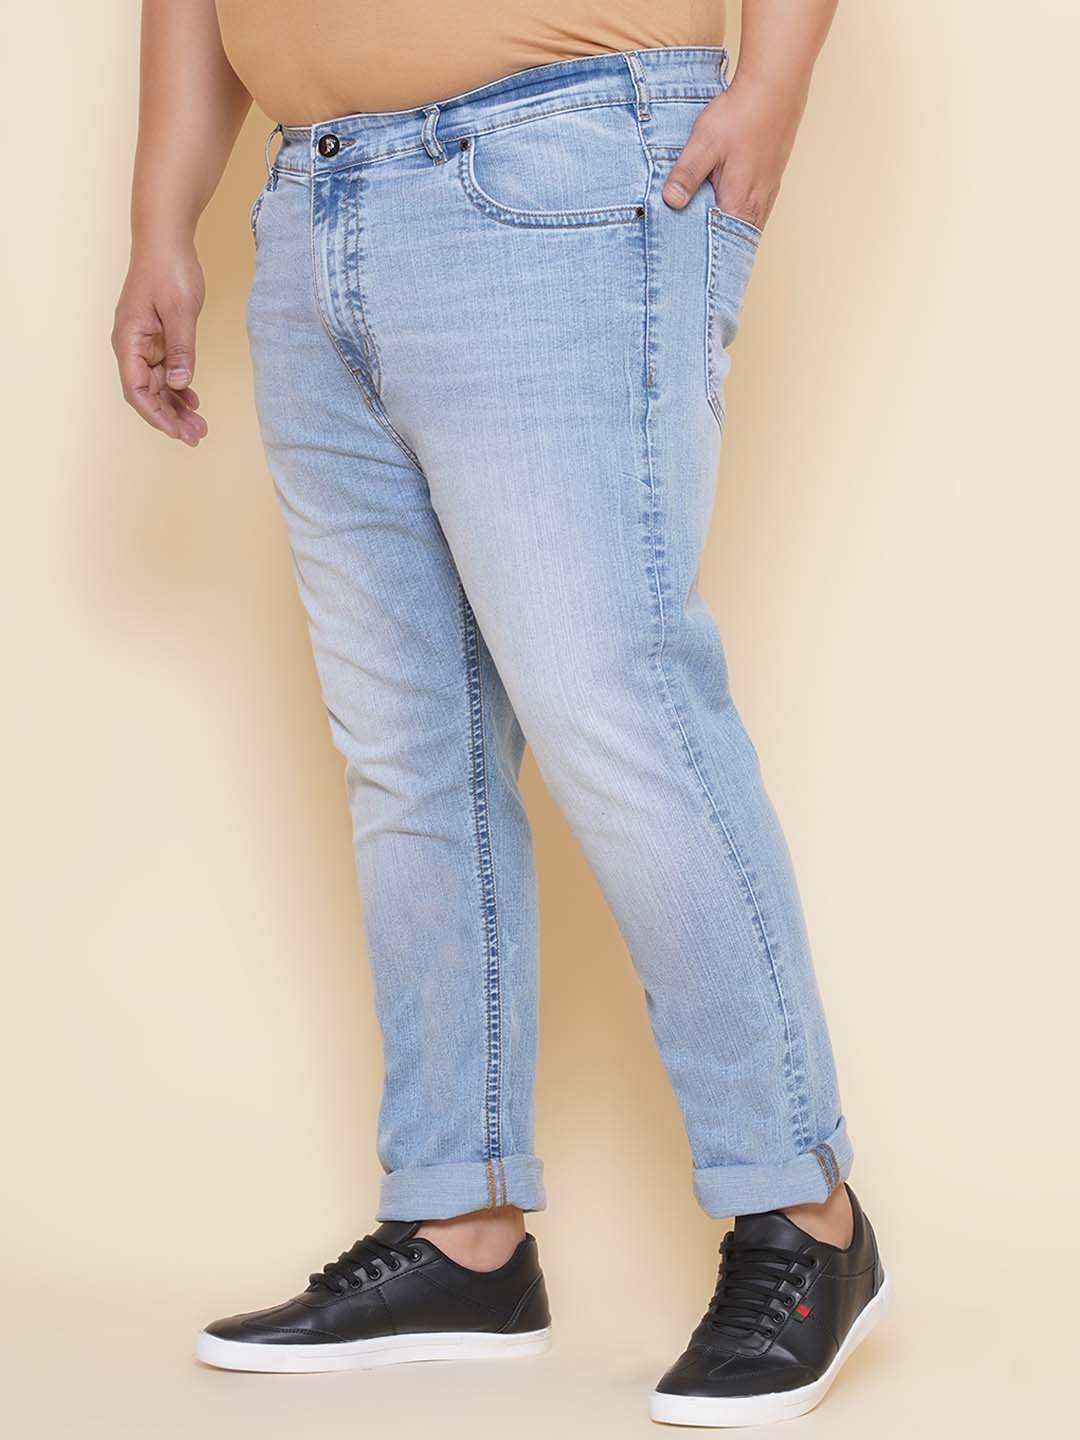 bottomwear/jeans/PJPJ60111/pjpj60111-4.jpg